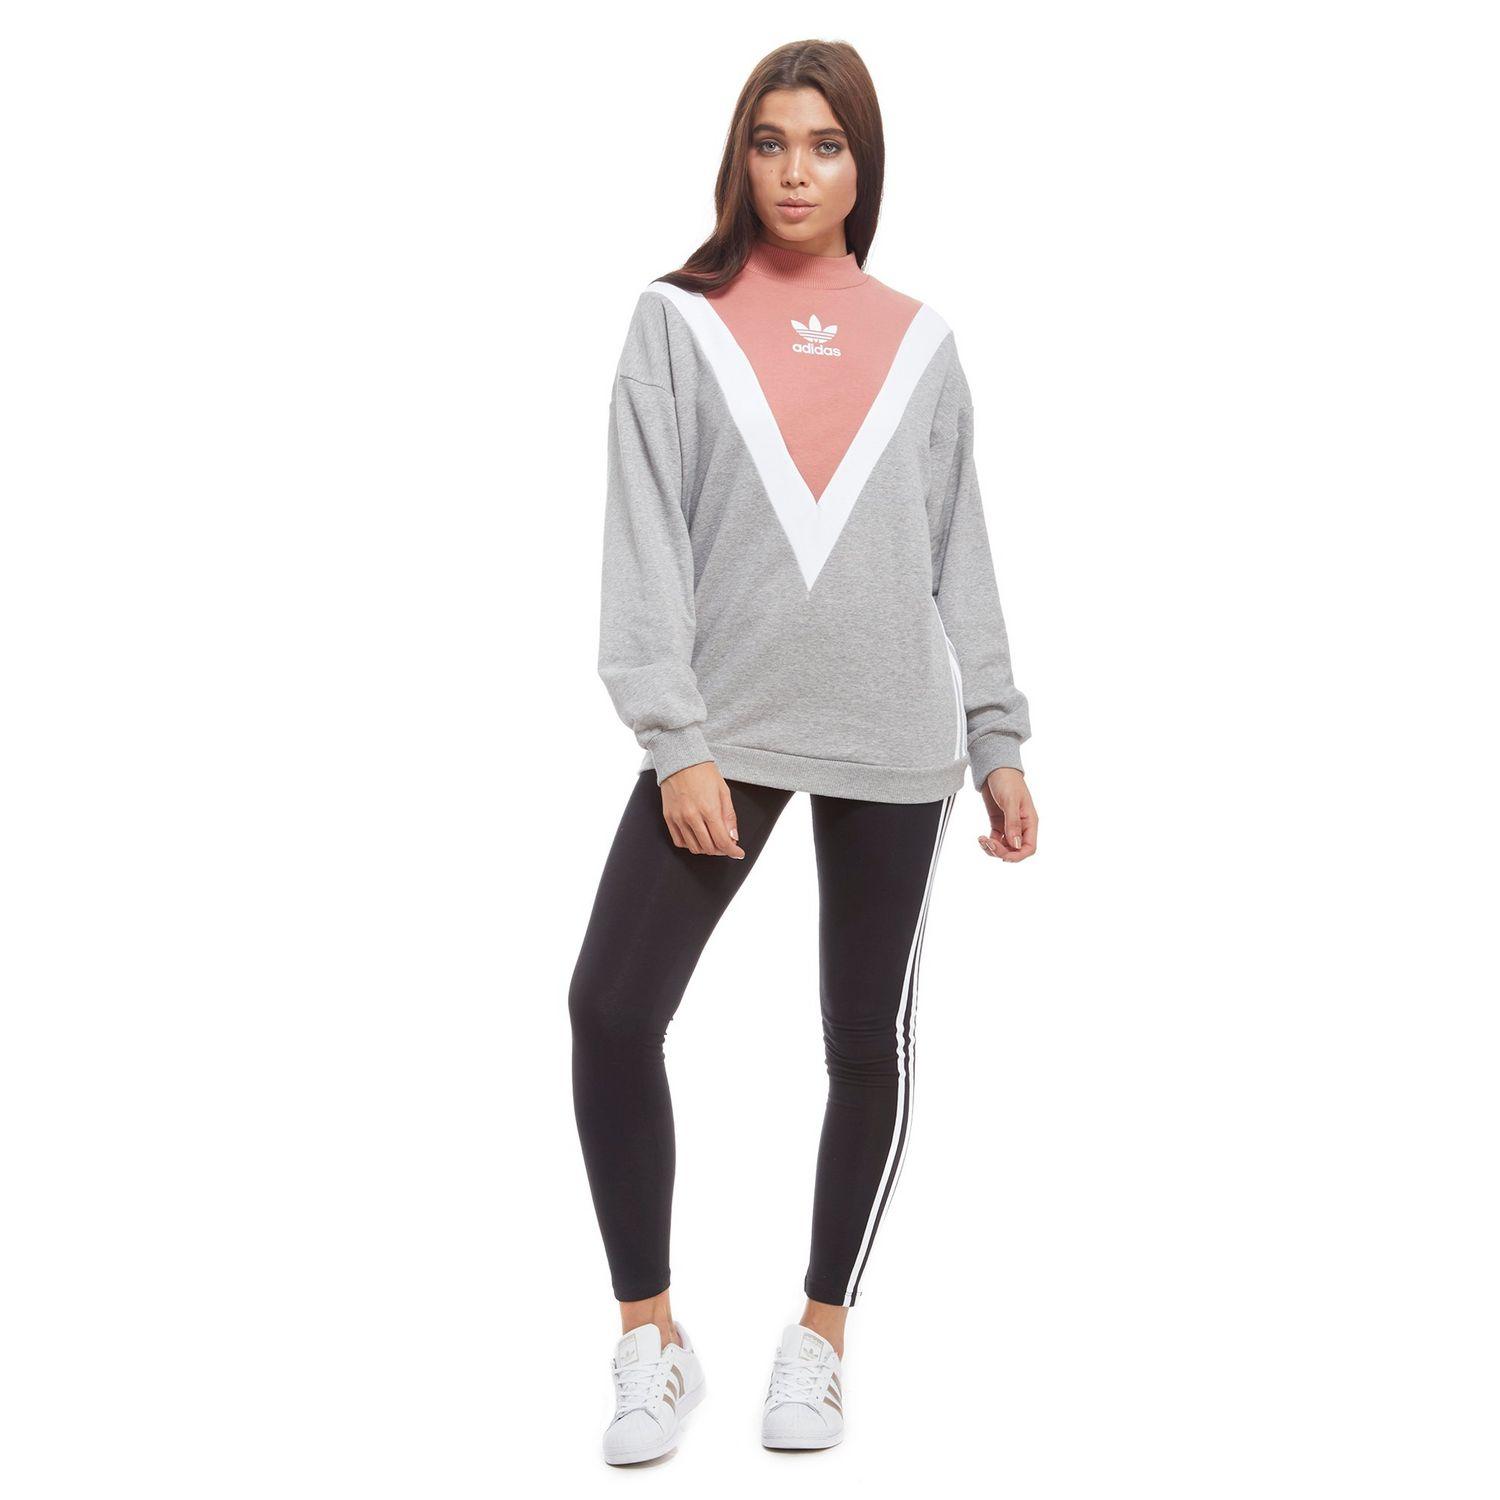 adidas Originals Chevron Sweatshirt in Grey/White/Pink (Grey) Lyst